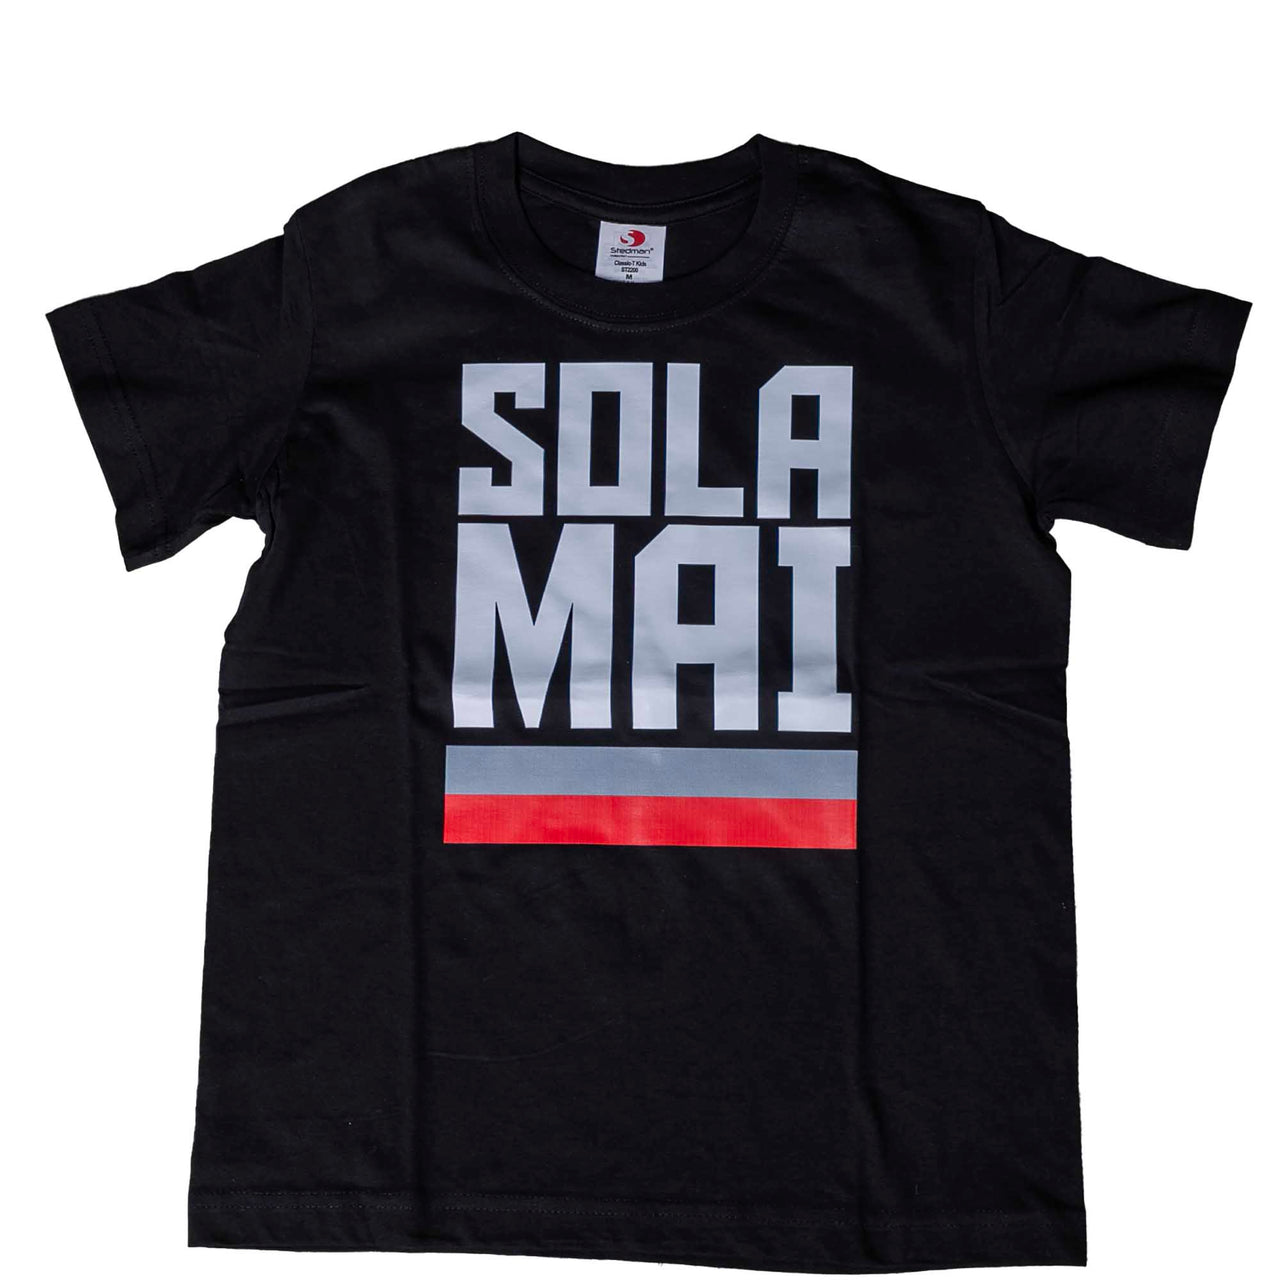 US CREMONESE black t-shirt "SOLA MAI" Junior / Adult